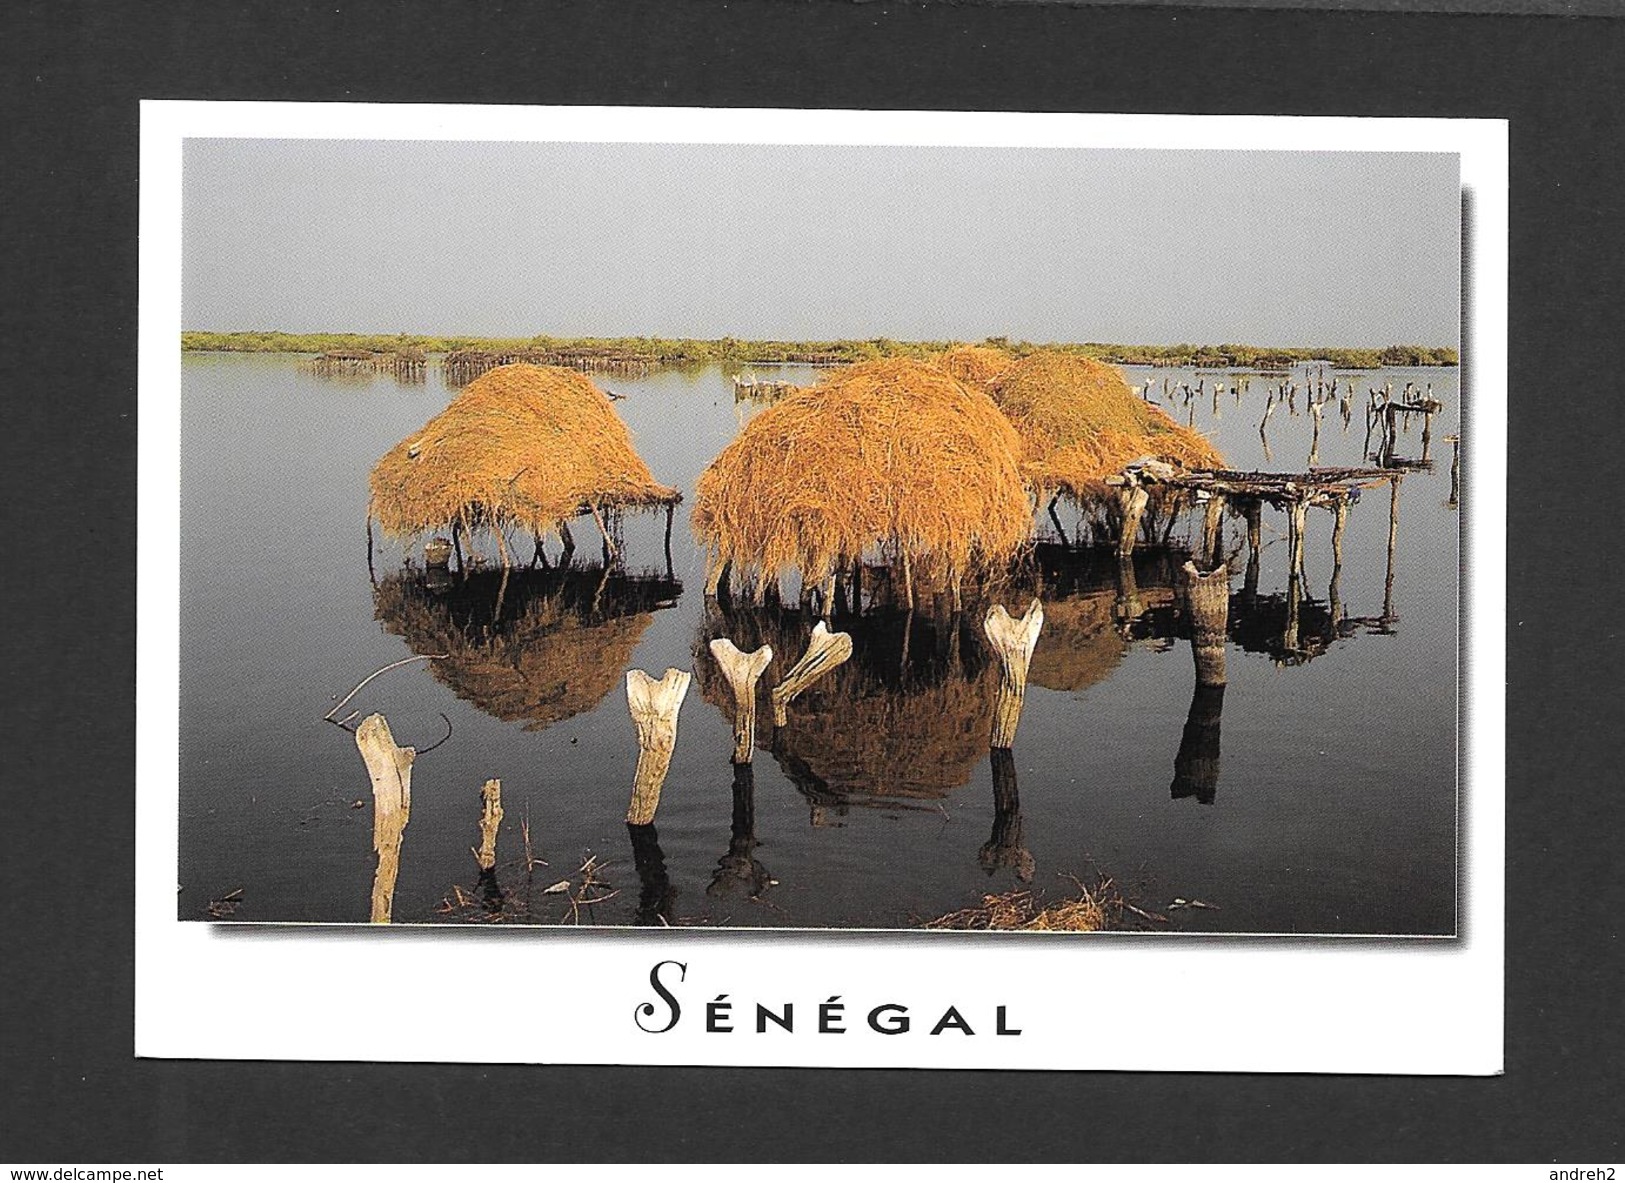 SÉNÉGAL - AFRIQUE - CHARMES ET COULEURS DU SÉNÉGAL FADIOUTH - PHOTO AM .BREGER - Sénégal